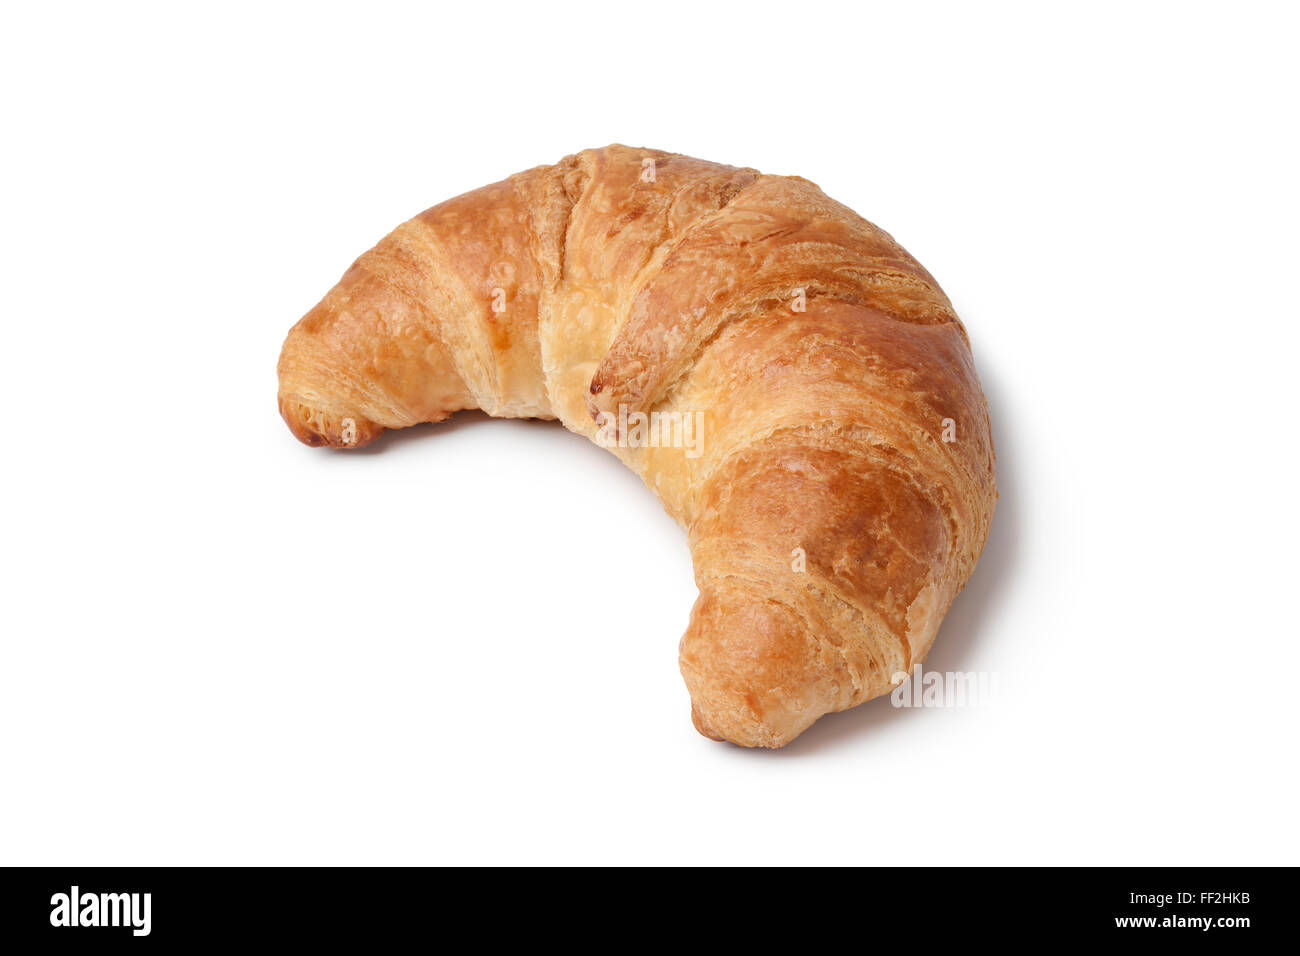 Whole single fresh French croissant on white background Stock Photo